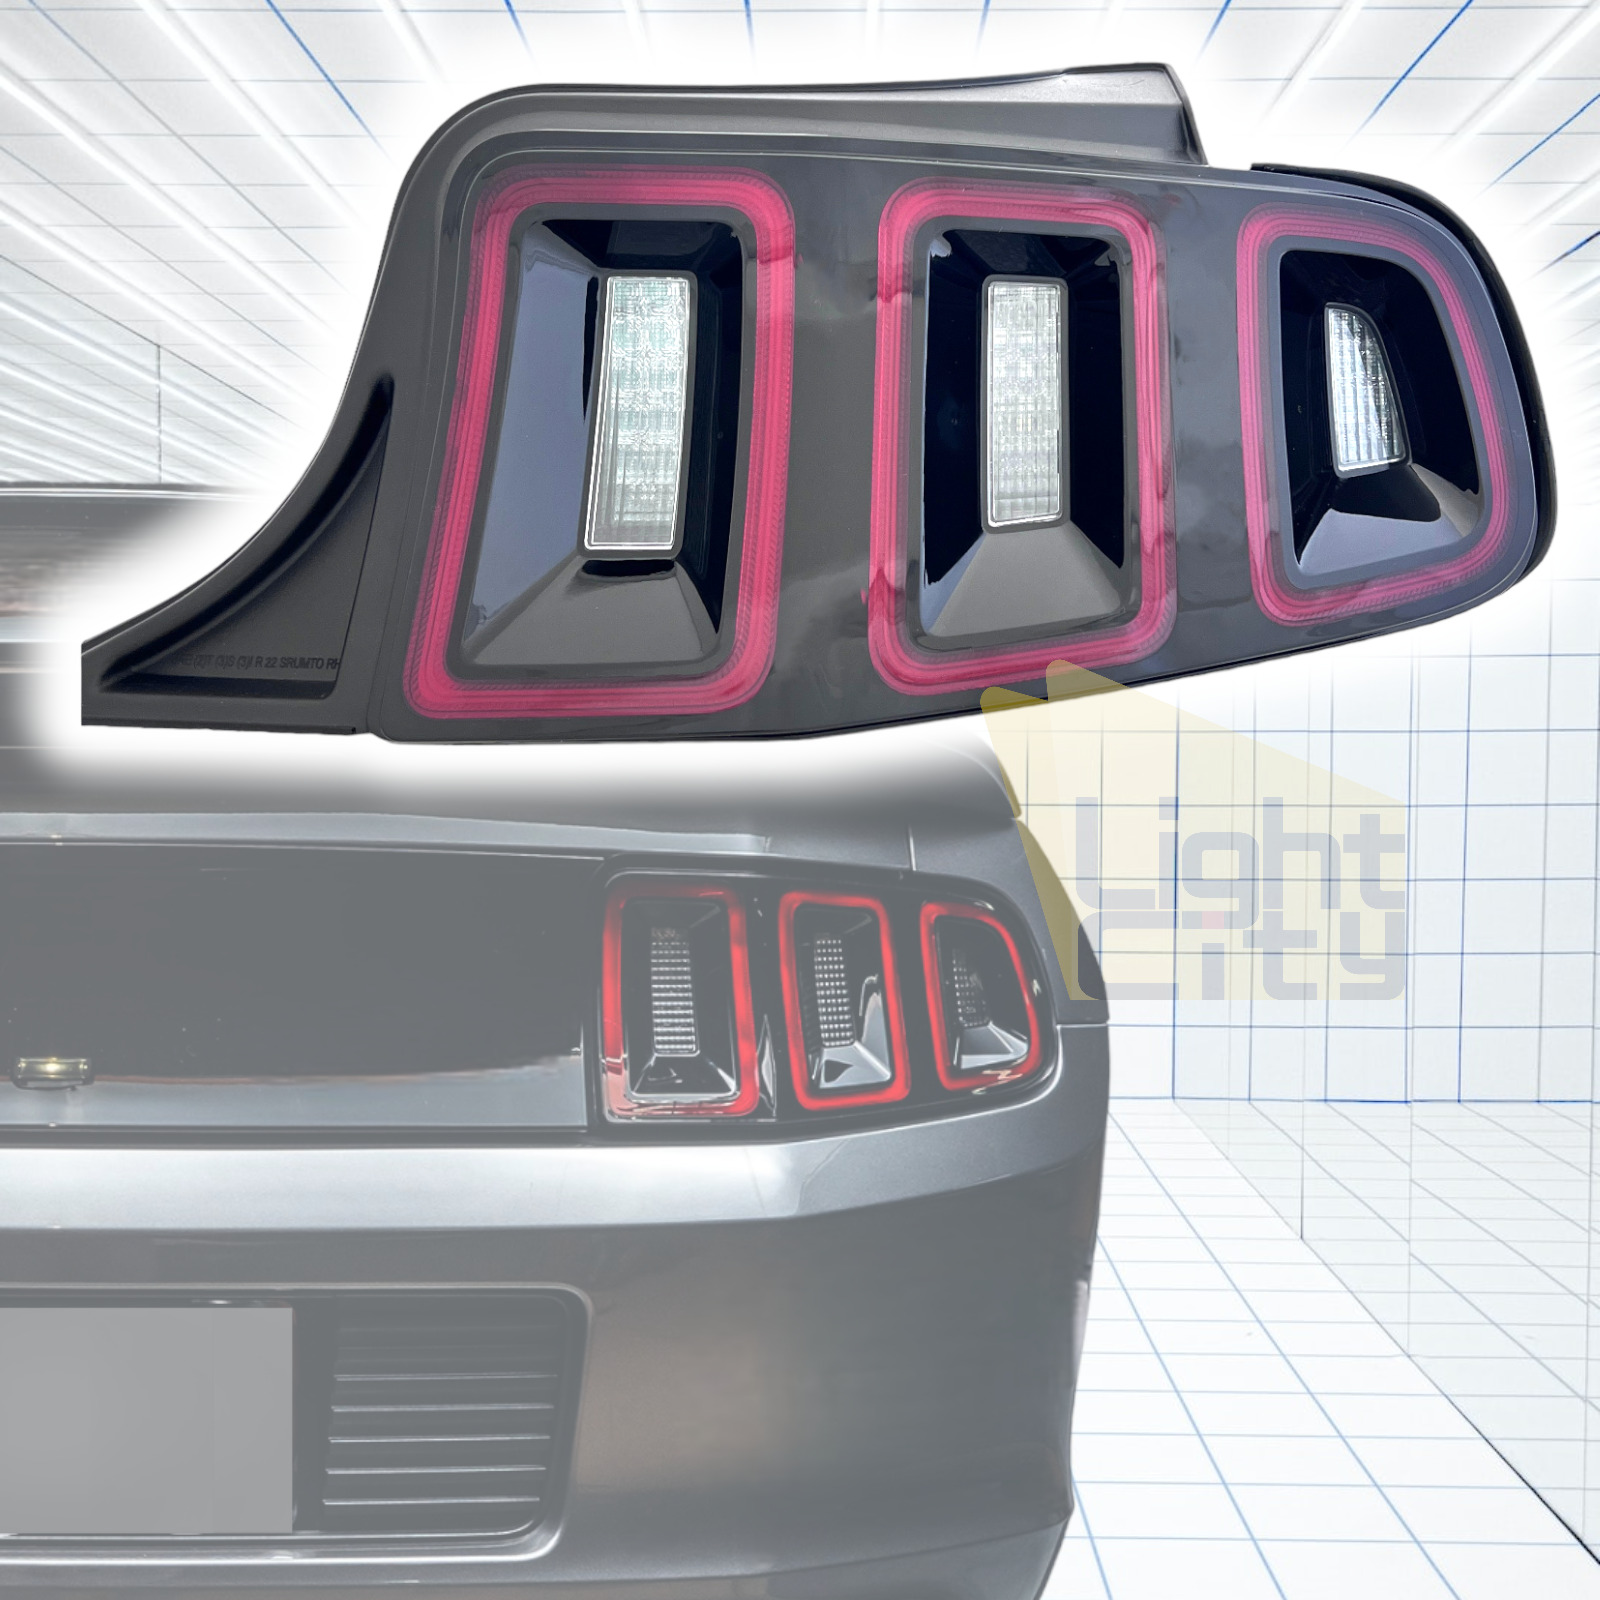 [FULL LED] For 2013-2014 Ford Mustang Factory Style Passenger Side Tail Light RH